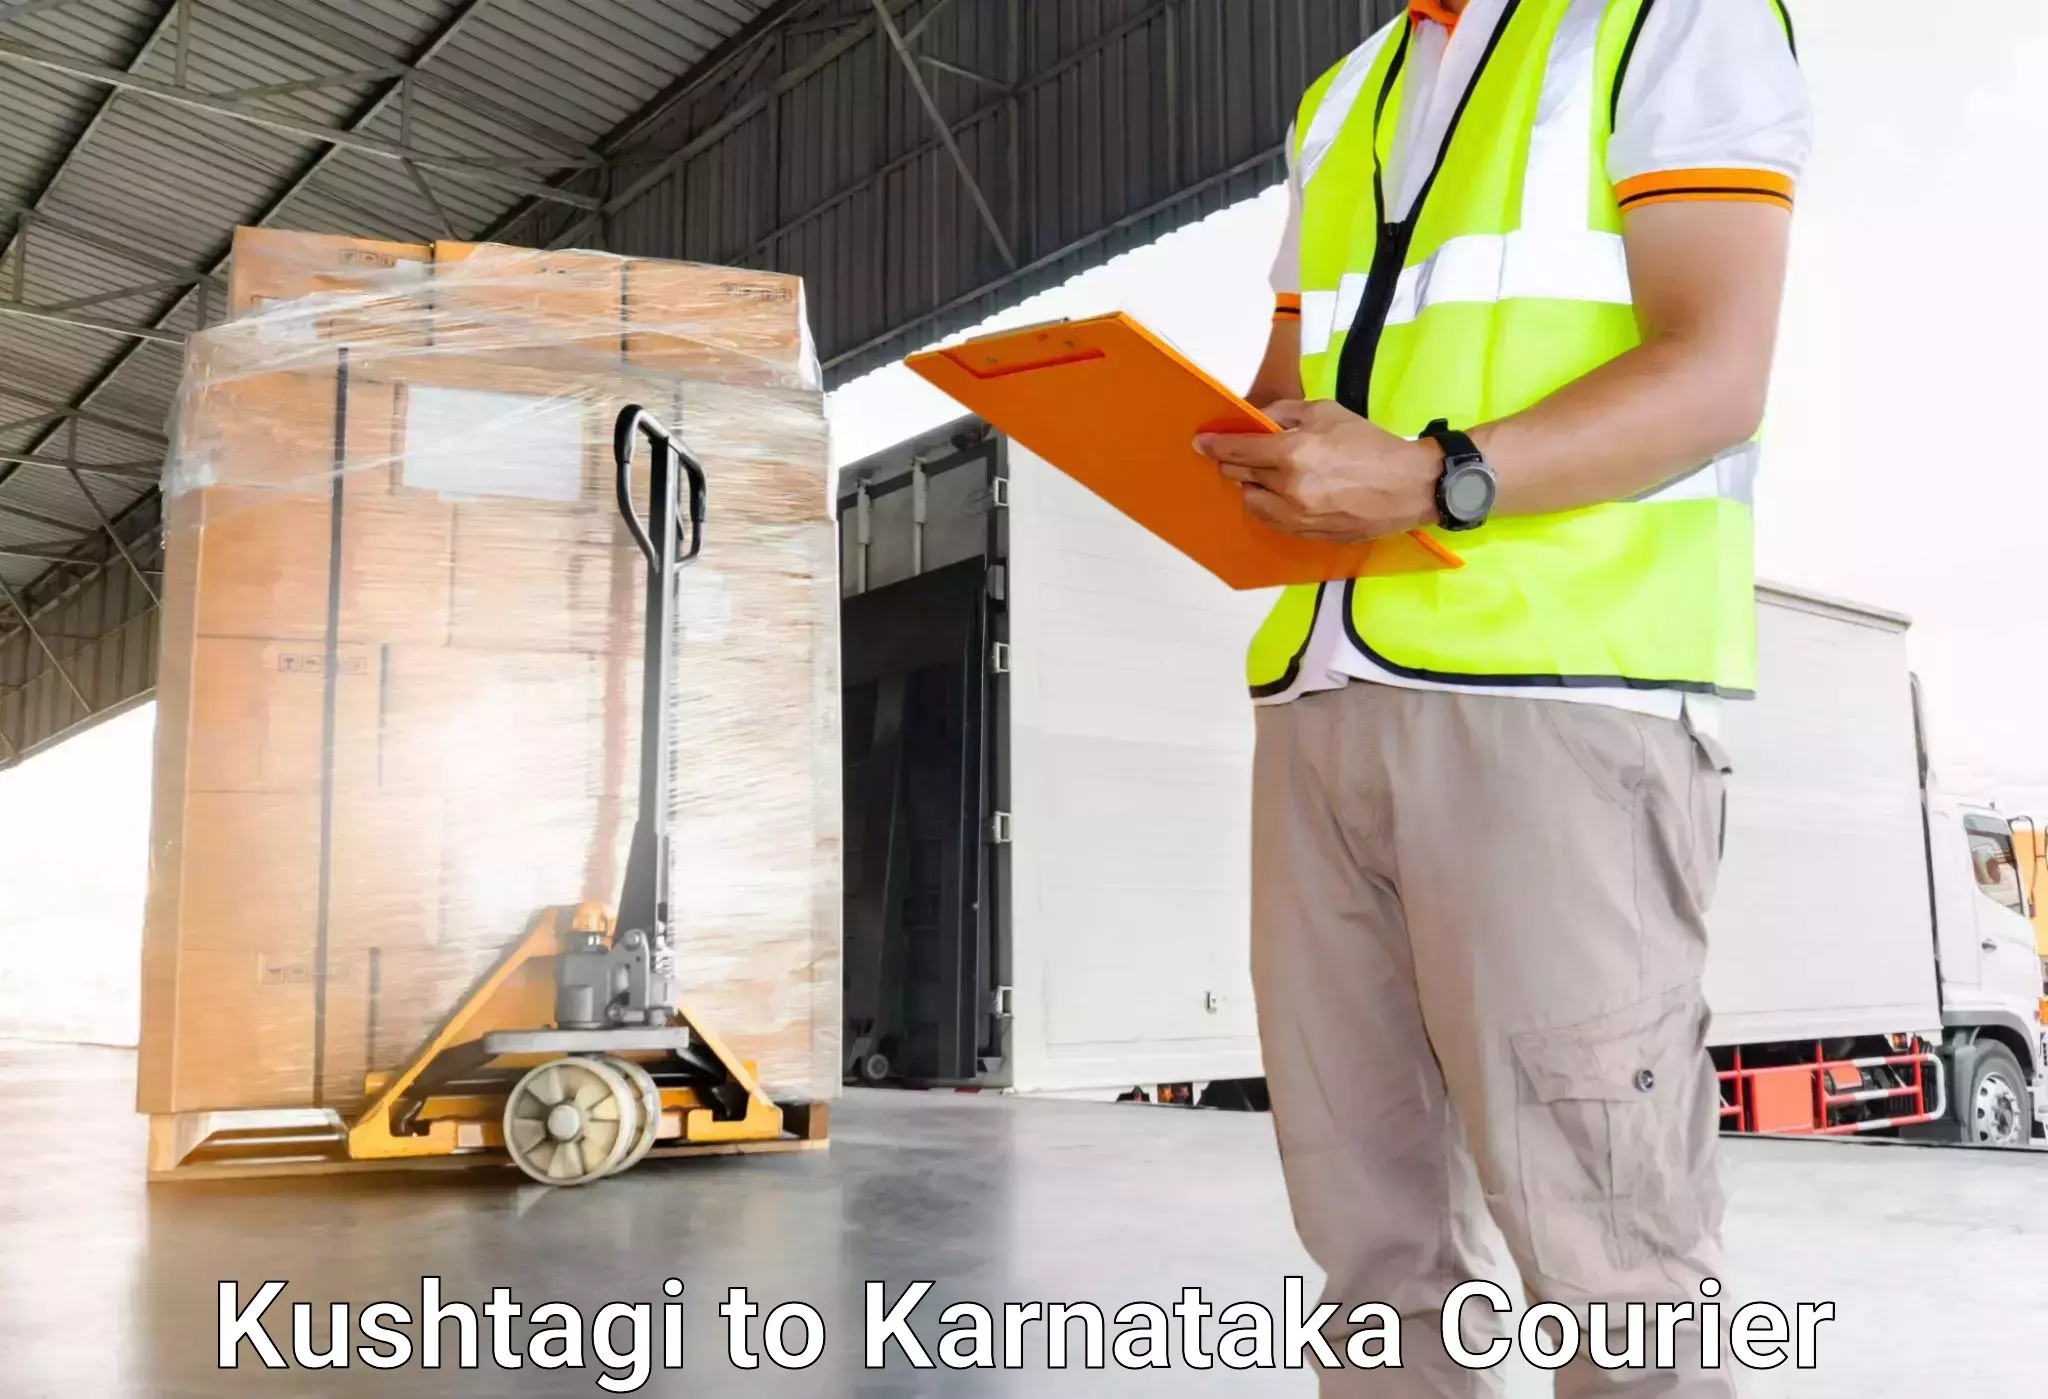 Luggage shipment specialists Kushtagi to Gundlupete